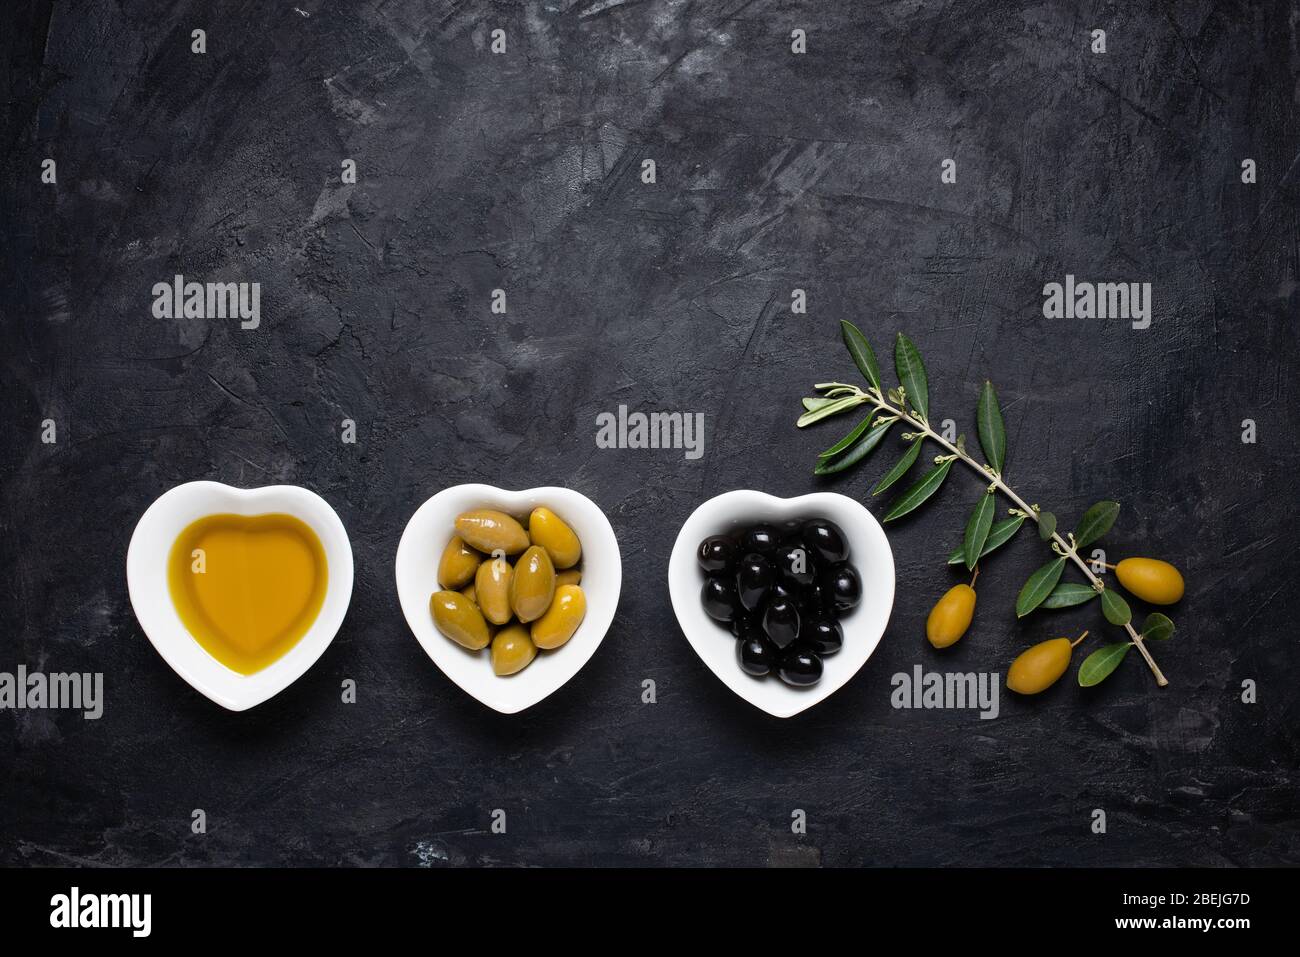 Vue de dessus de la vie avec des bols en céramique, en forme de coeur, avec de l'huile d'olive extra vierge, des olives vertes et noires, sur un fond noir rugueux. Banque D'Images